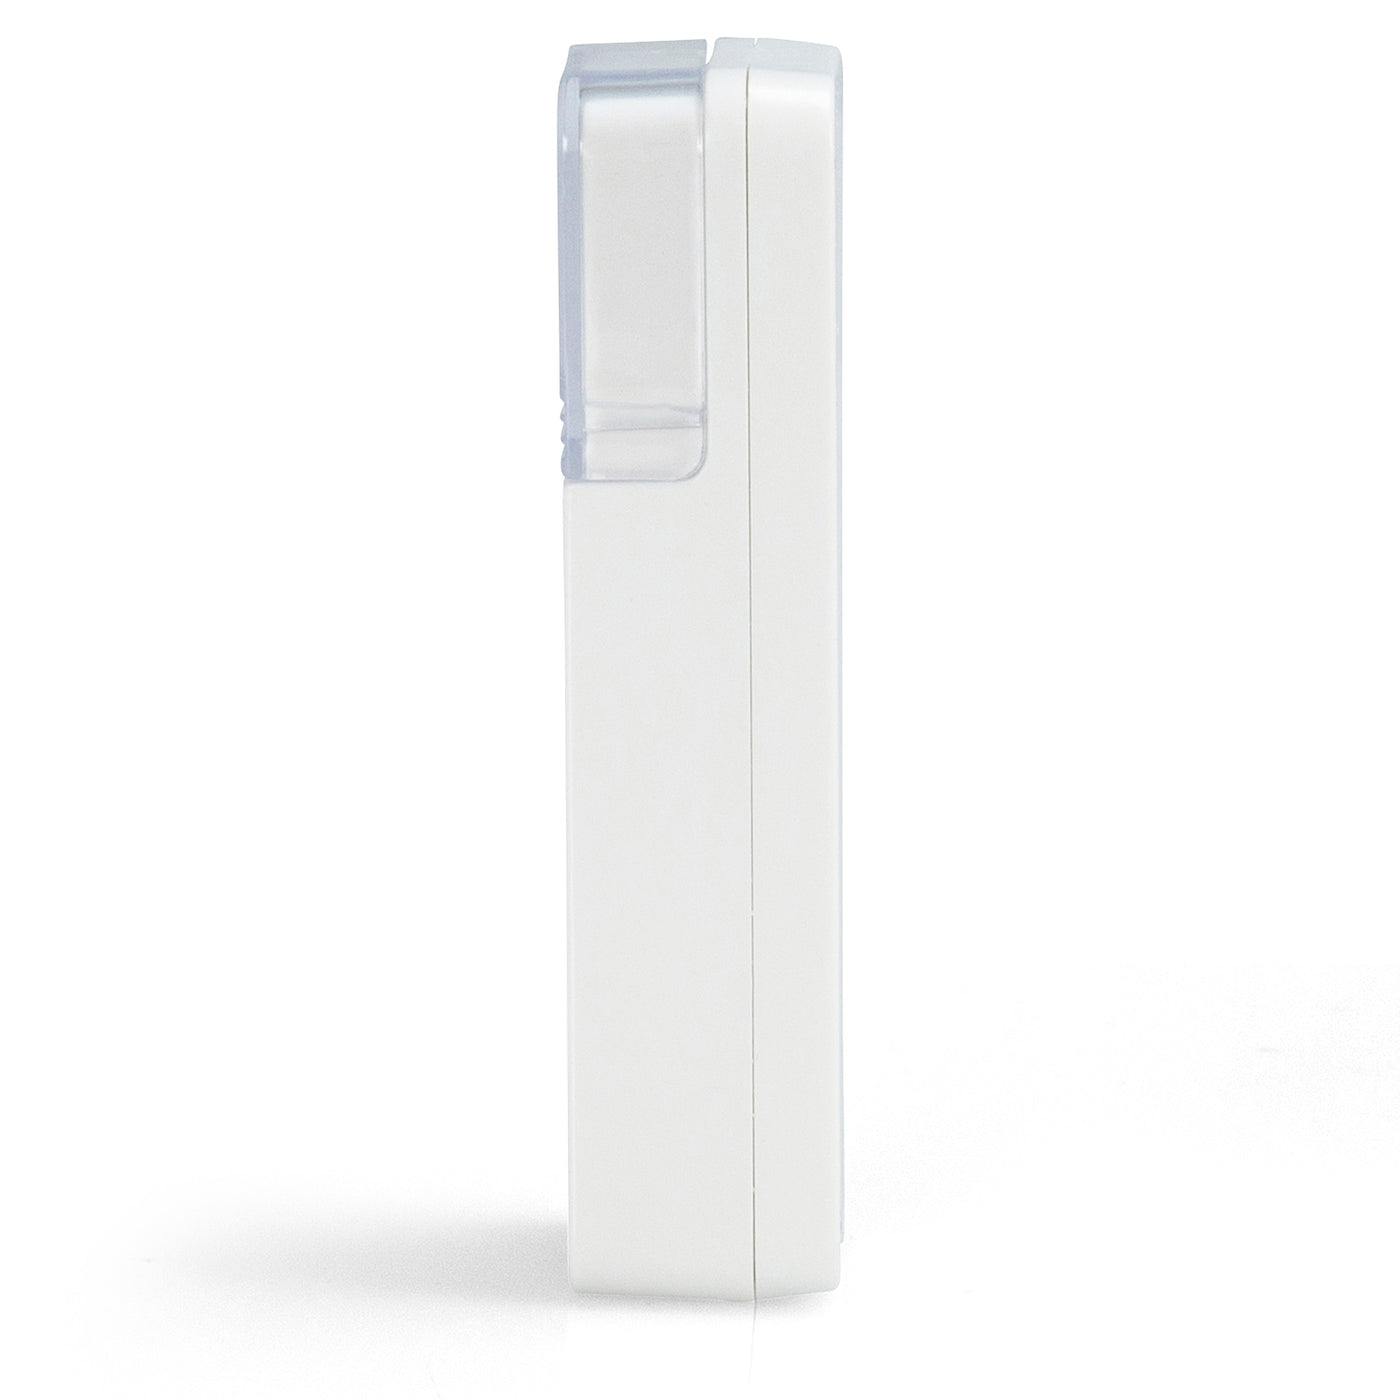 Fysic FD-110 - Draadloze deurbel met flitslicht, wit